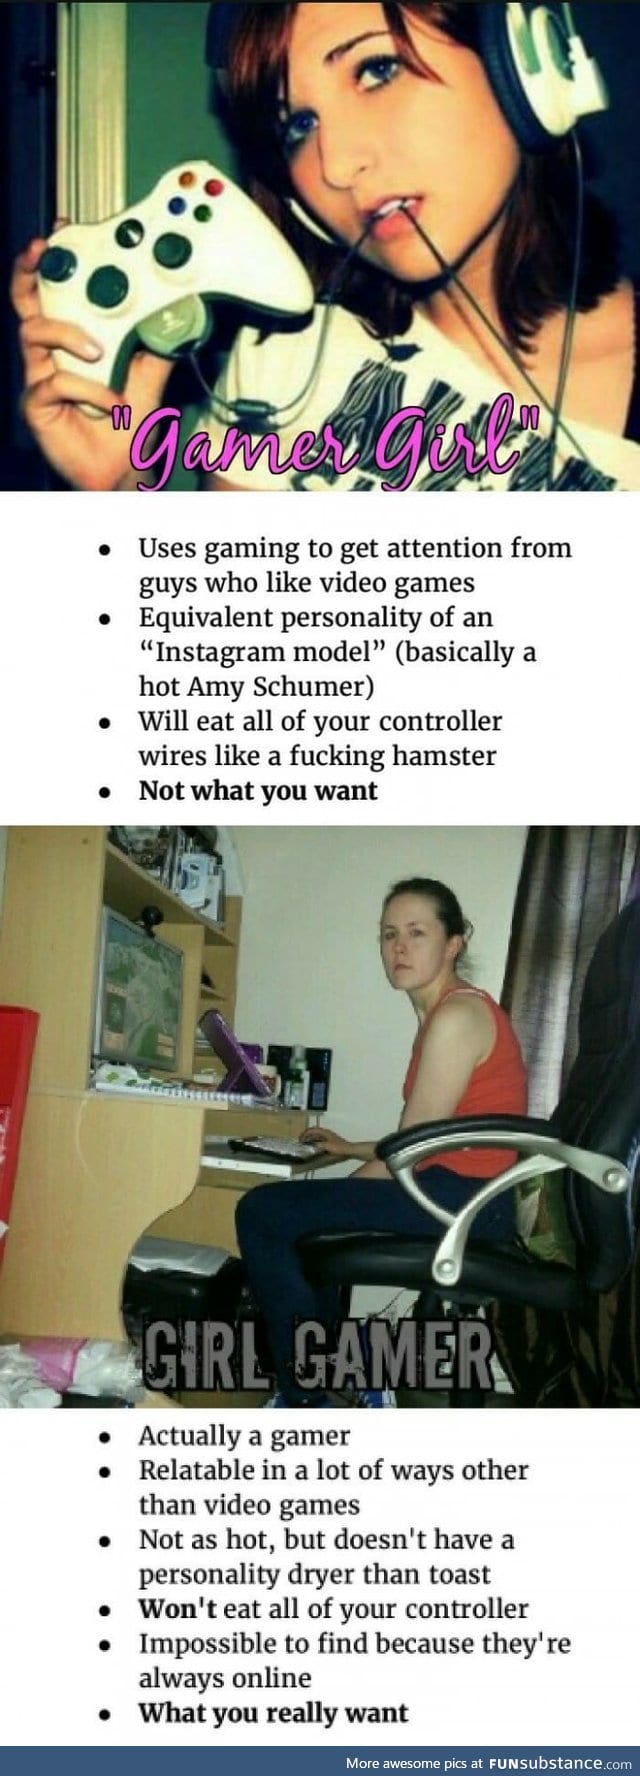 Gamer girl vs girl gamer